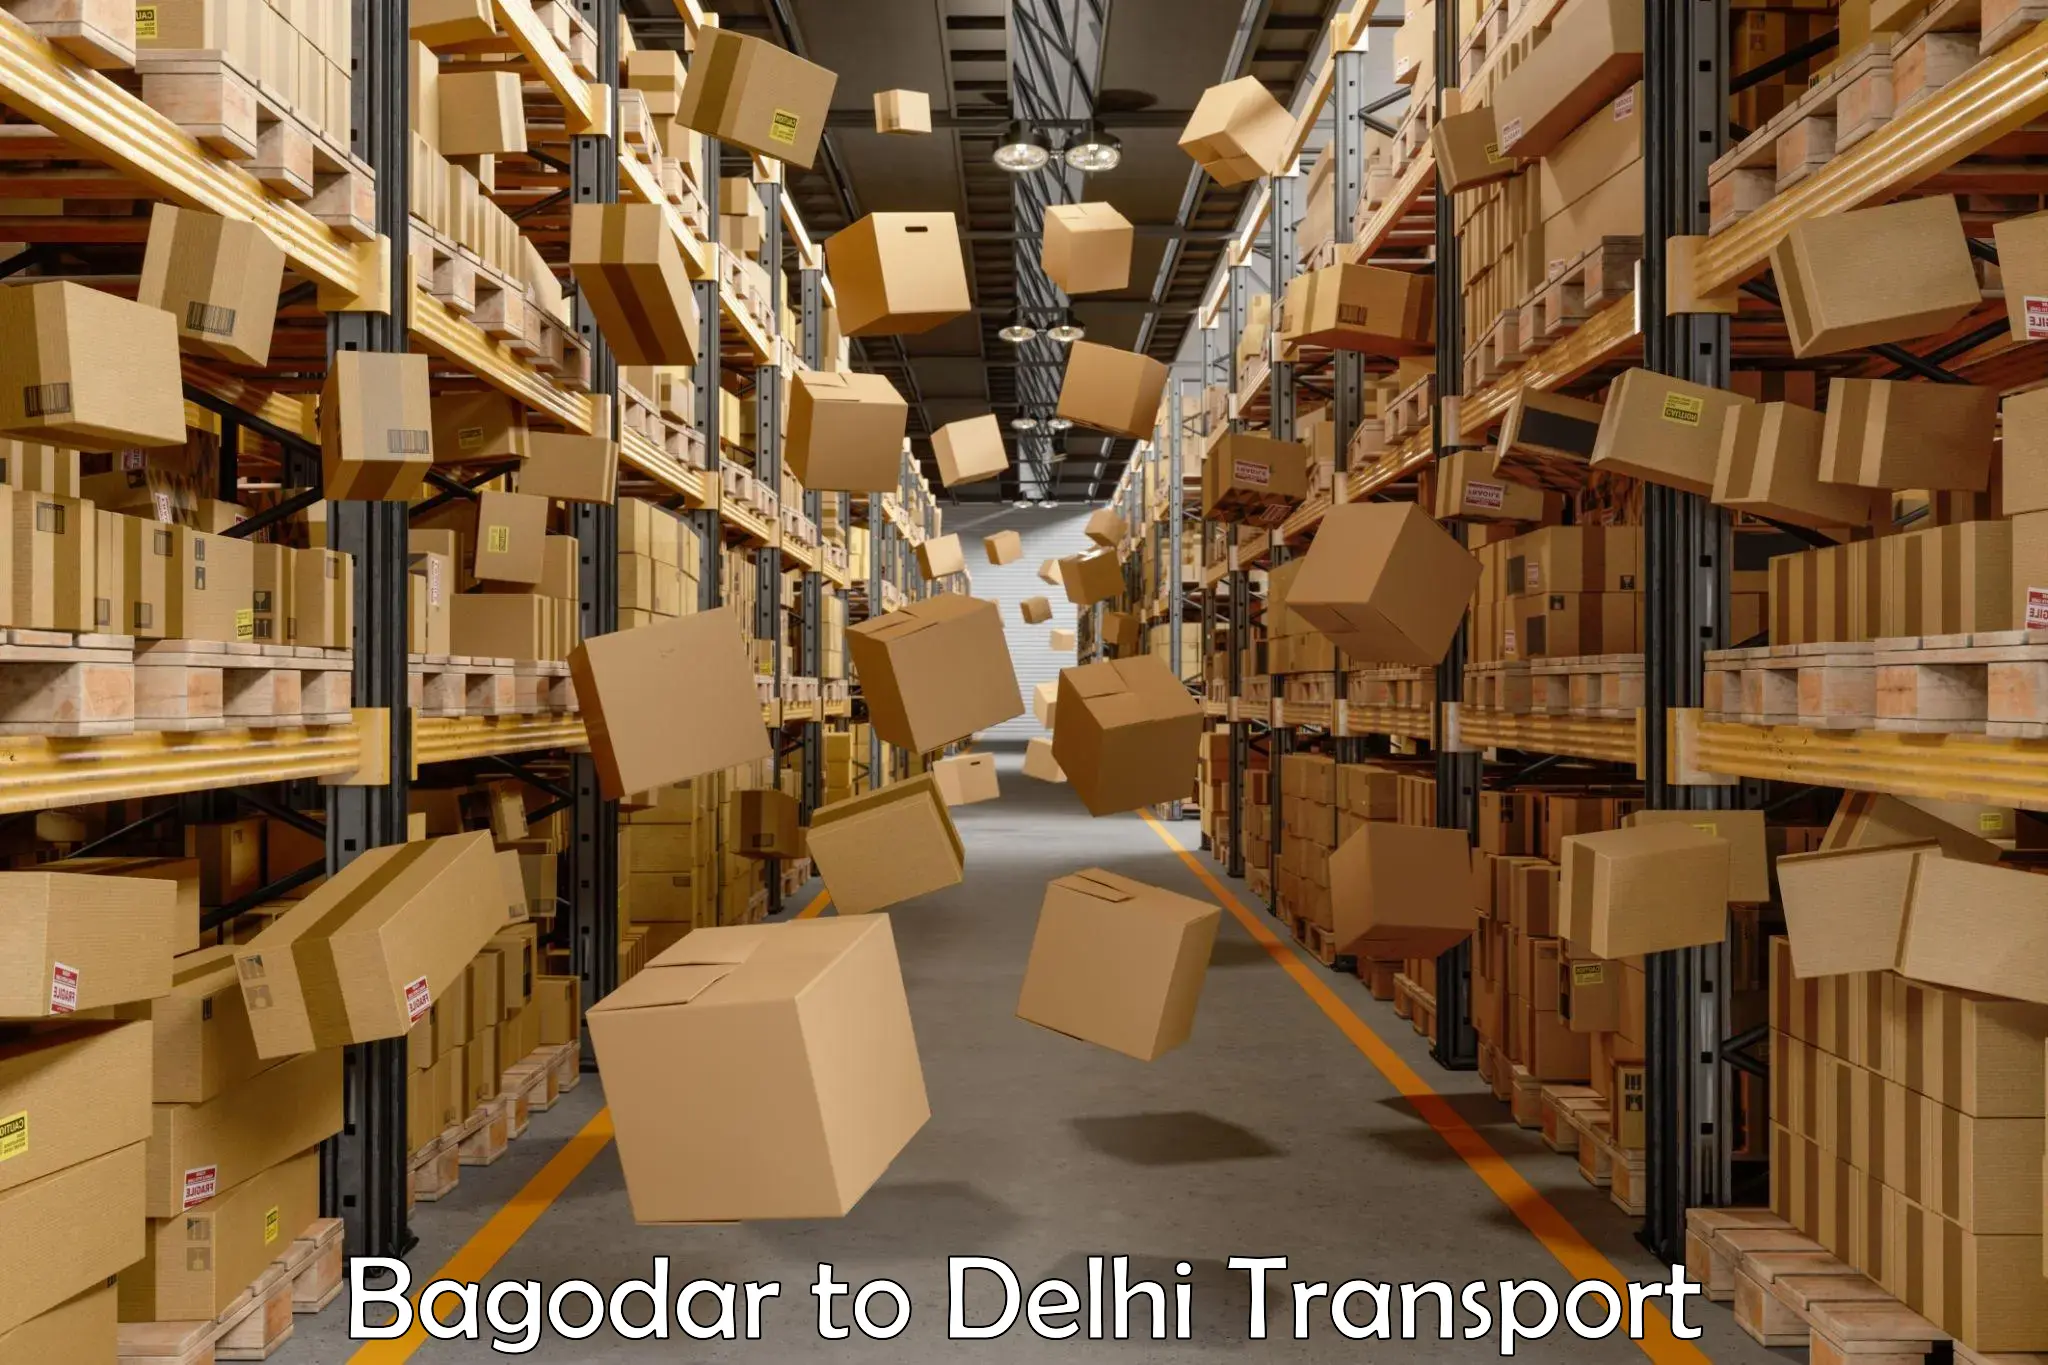 Land transport services Bagodar to NCR